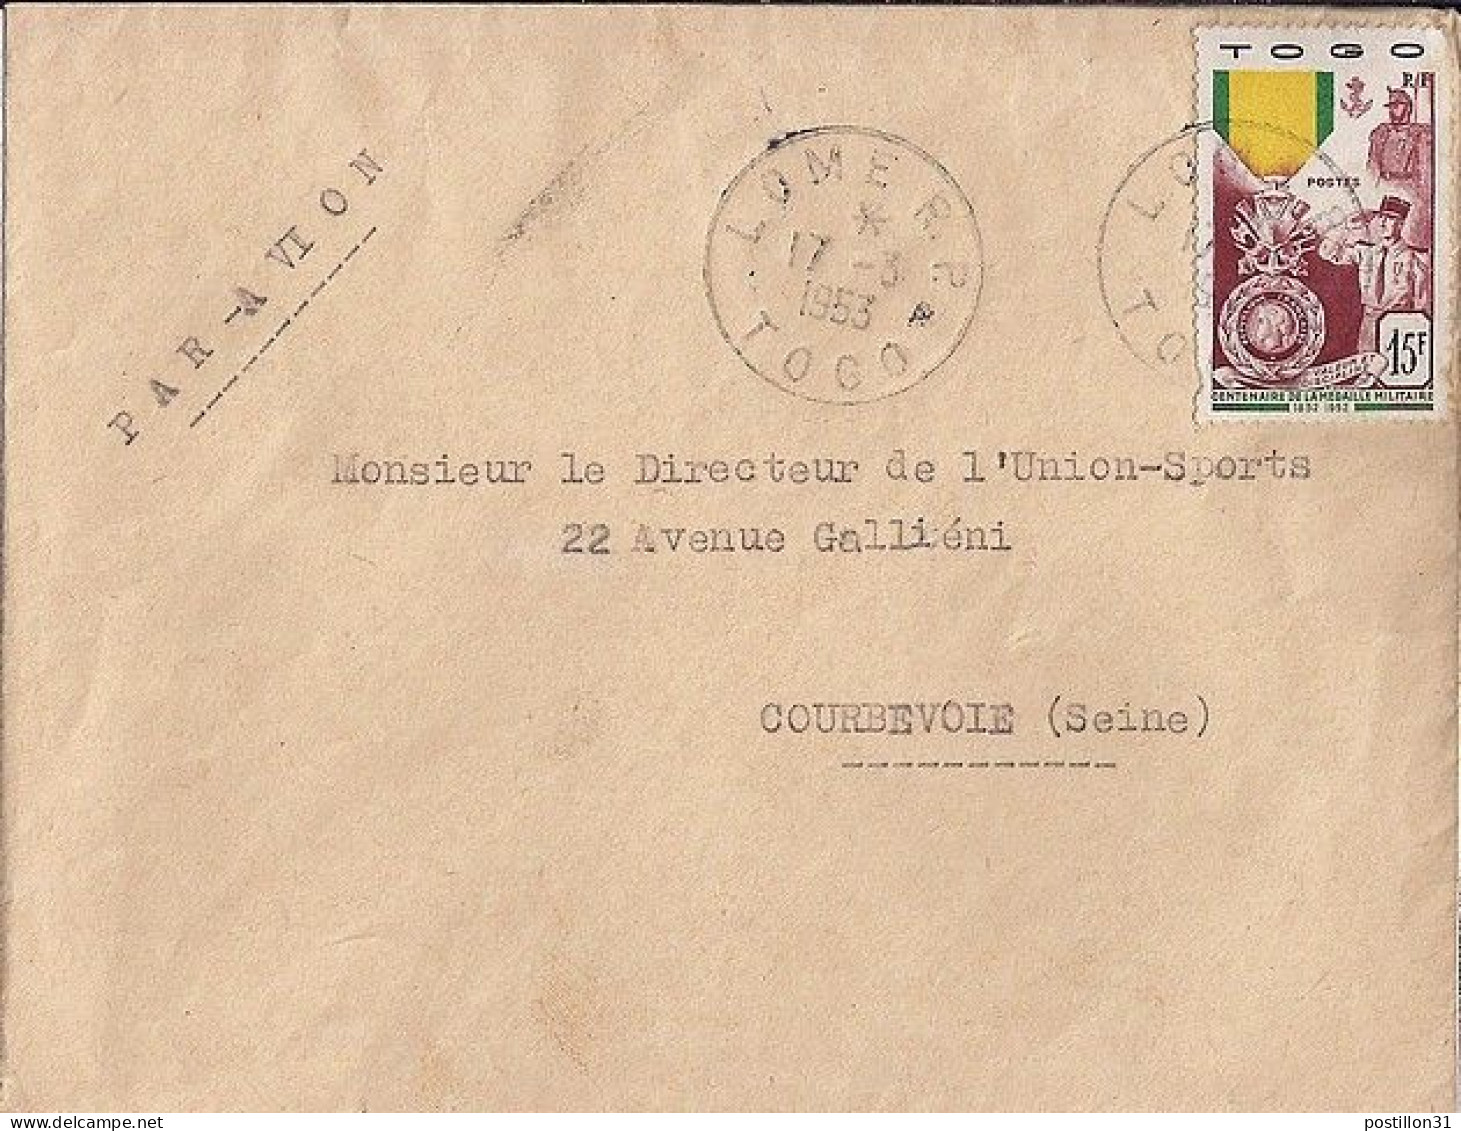 TOGO N° 255 S/L. DE LOME / 17.3.53 POUR LA FRANCE - Briefe U. Dokumente